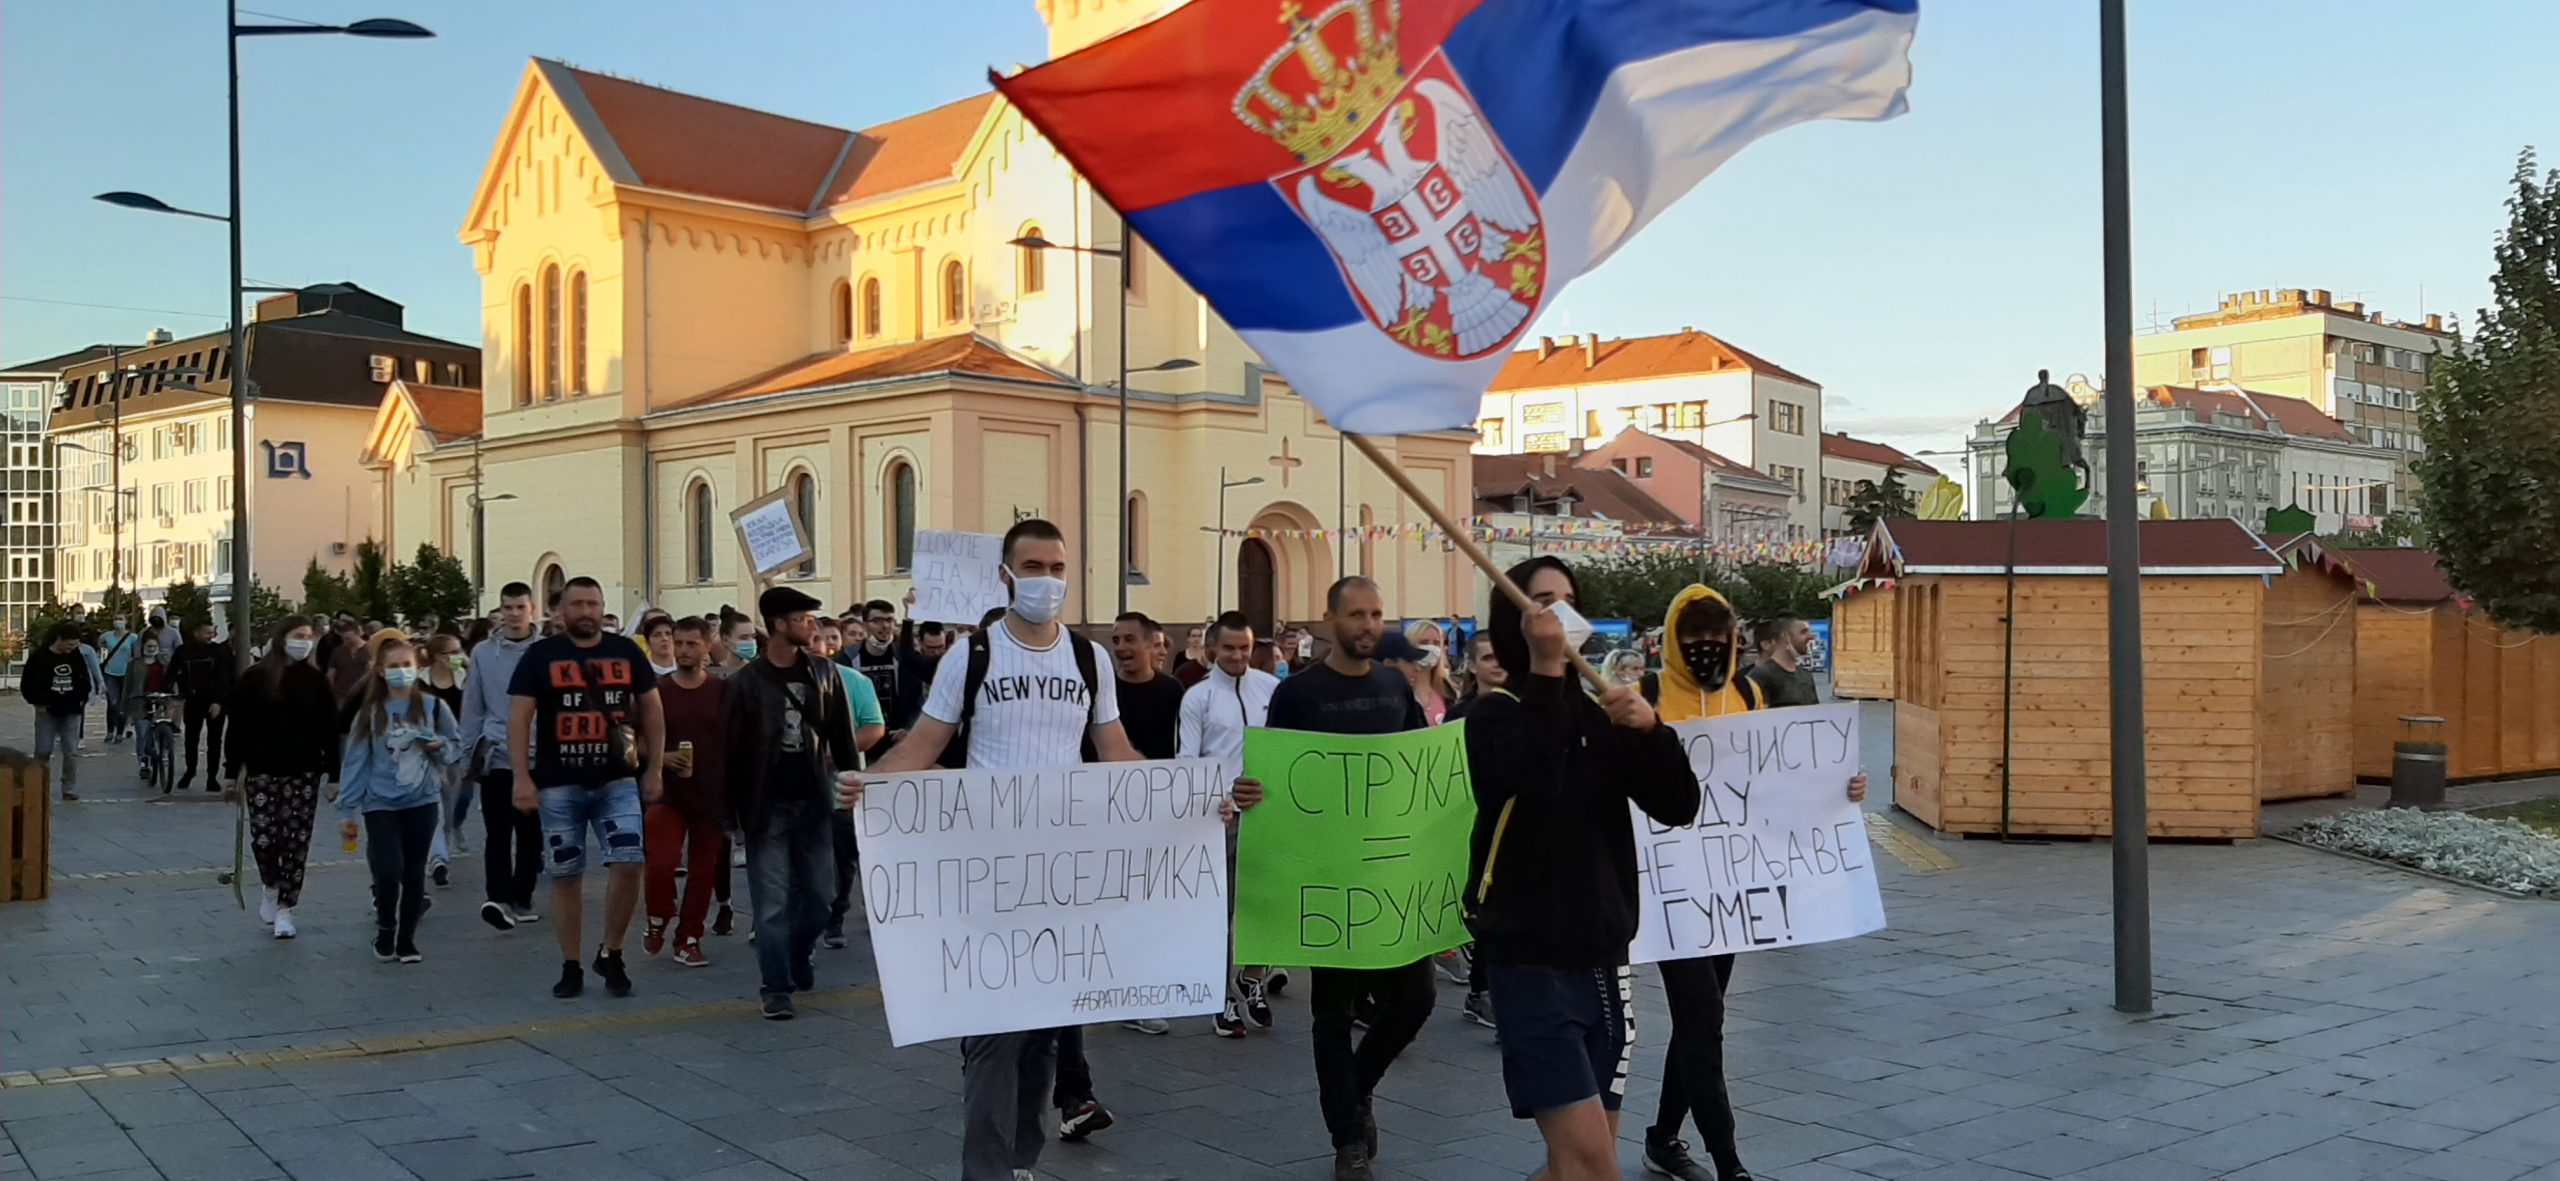 Protesti građana nastavljeni u više gradova Srbije (FOTO/VIDEO) 1